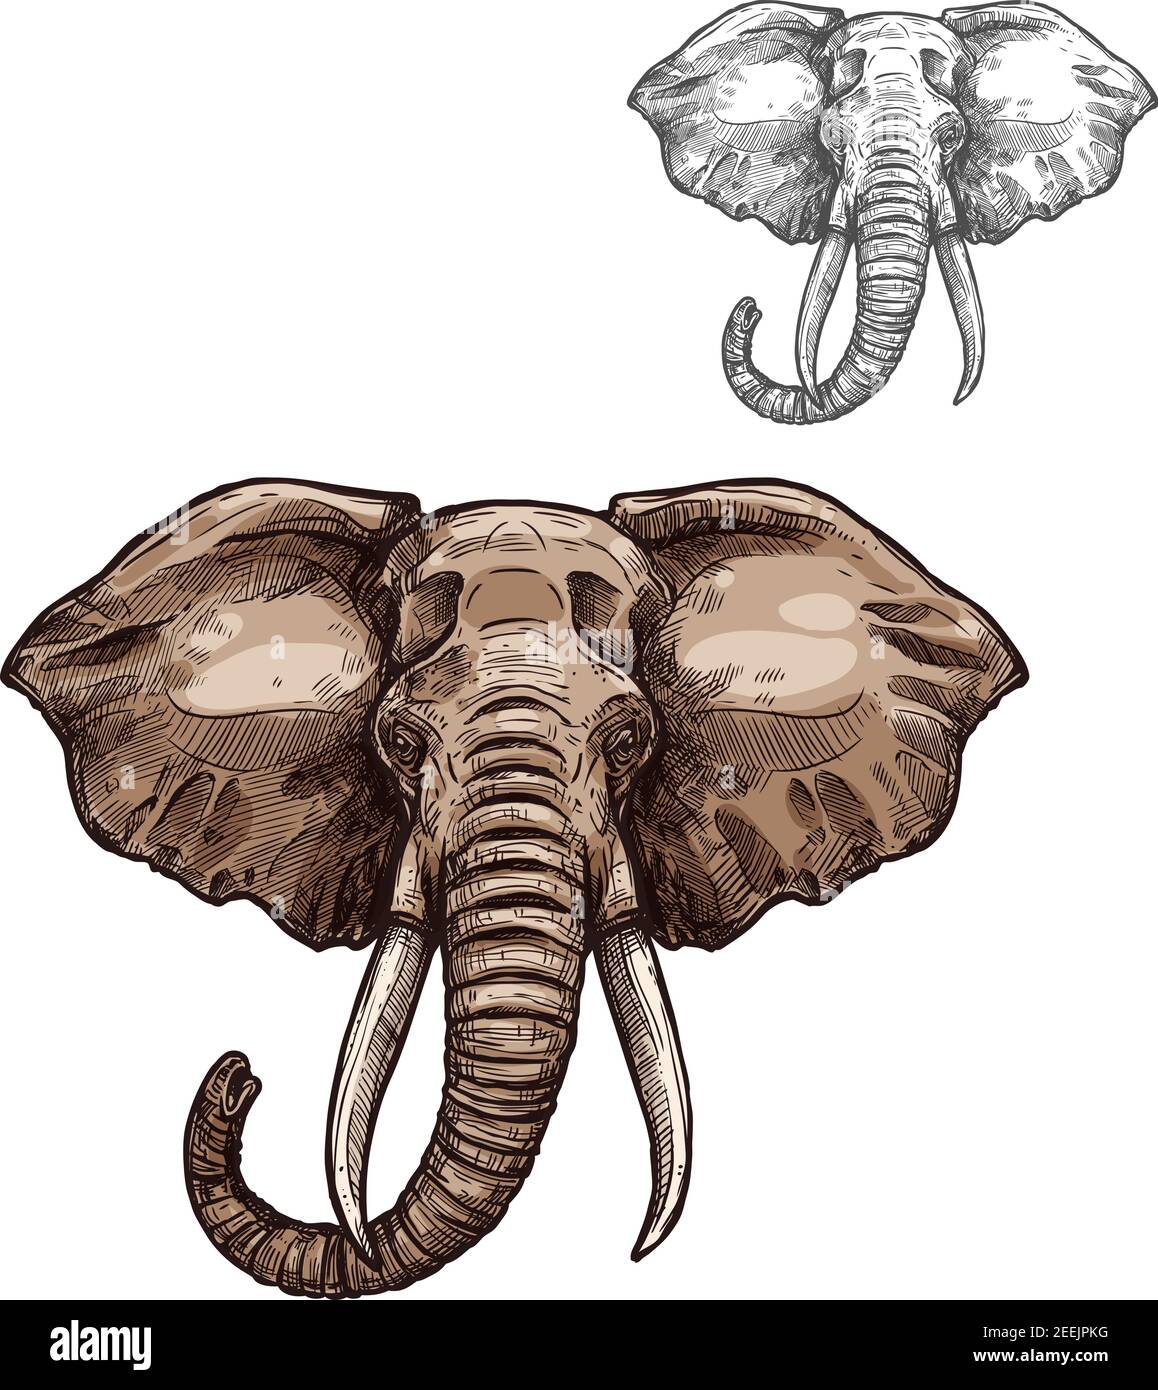 Schizzo animale di mammifero dell'elefante. Testa di elefante africano con pelle grigia, tronco curvo e tusk simbolo isolato per safari viaggio o emblema zoo, t-shirt Illustrazione Vettoriale